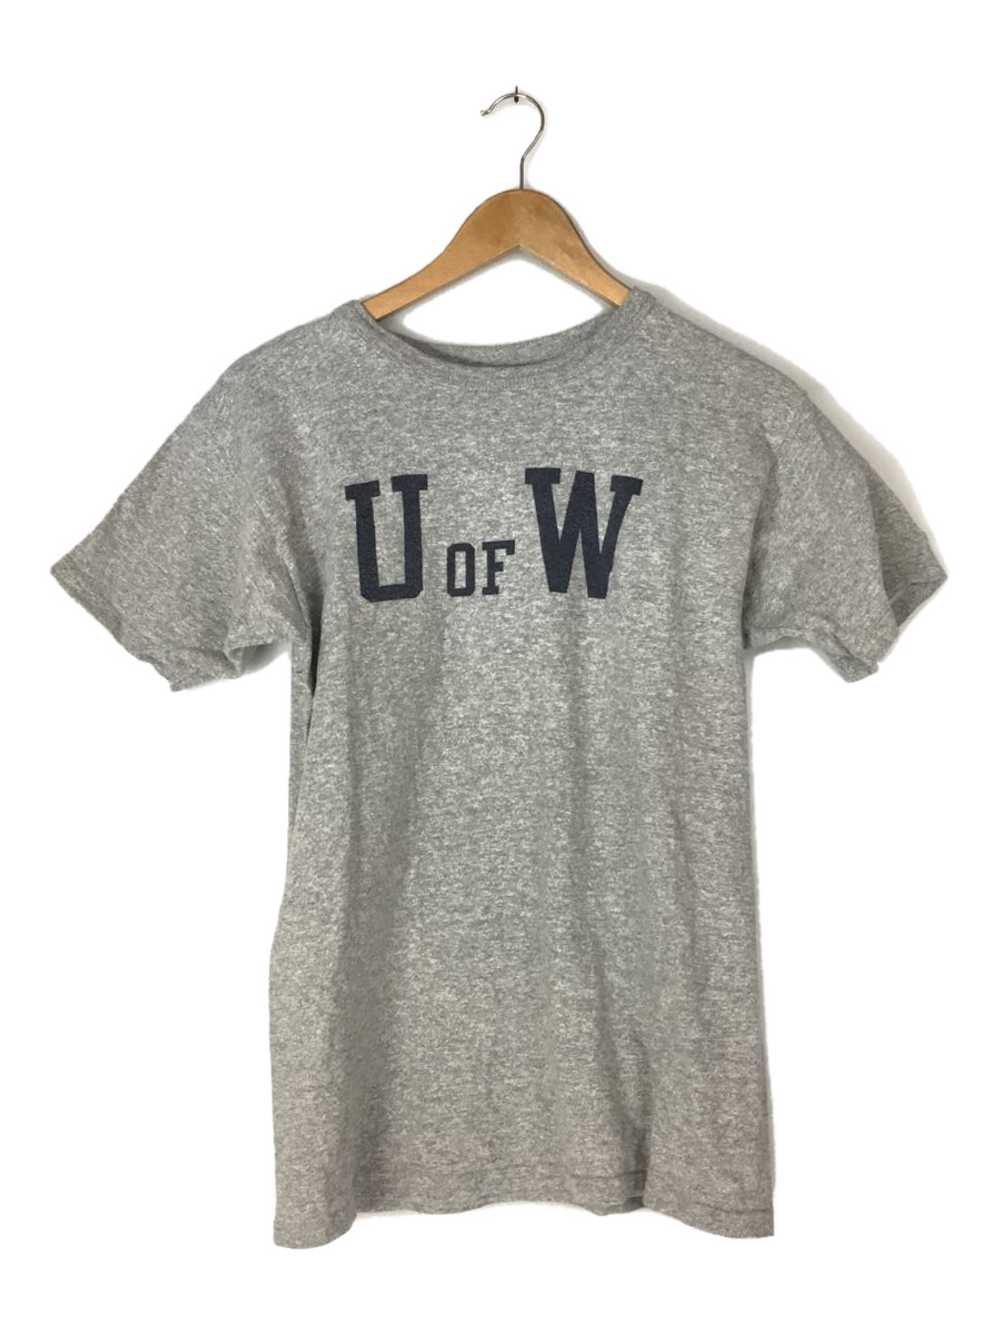 80s T-shirt Champion 80S/Late/U Of W/T-Shirt/M/Co… - image 1